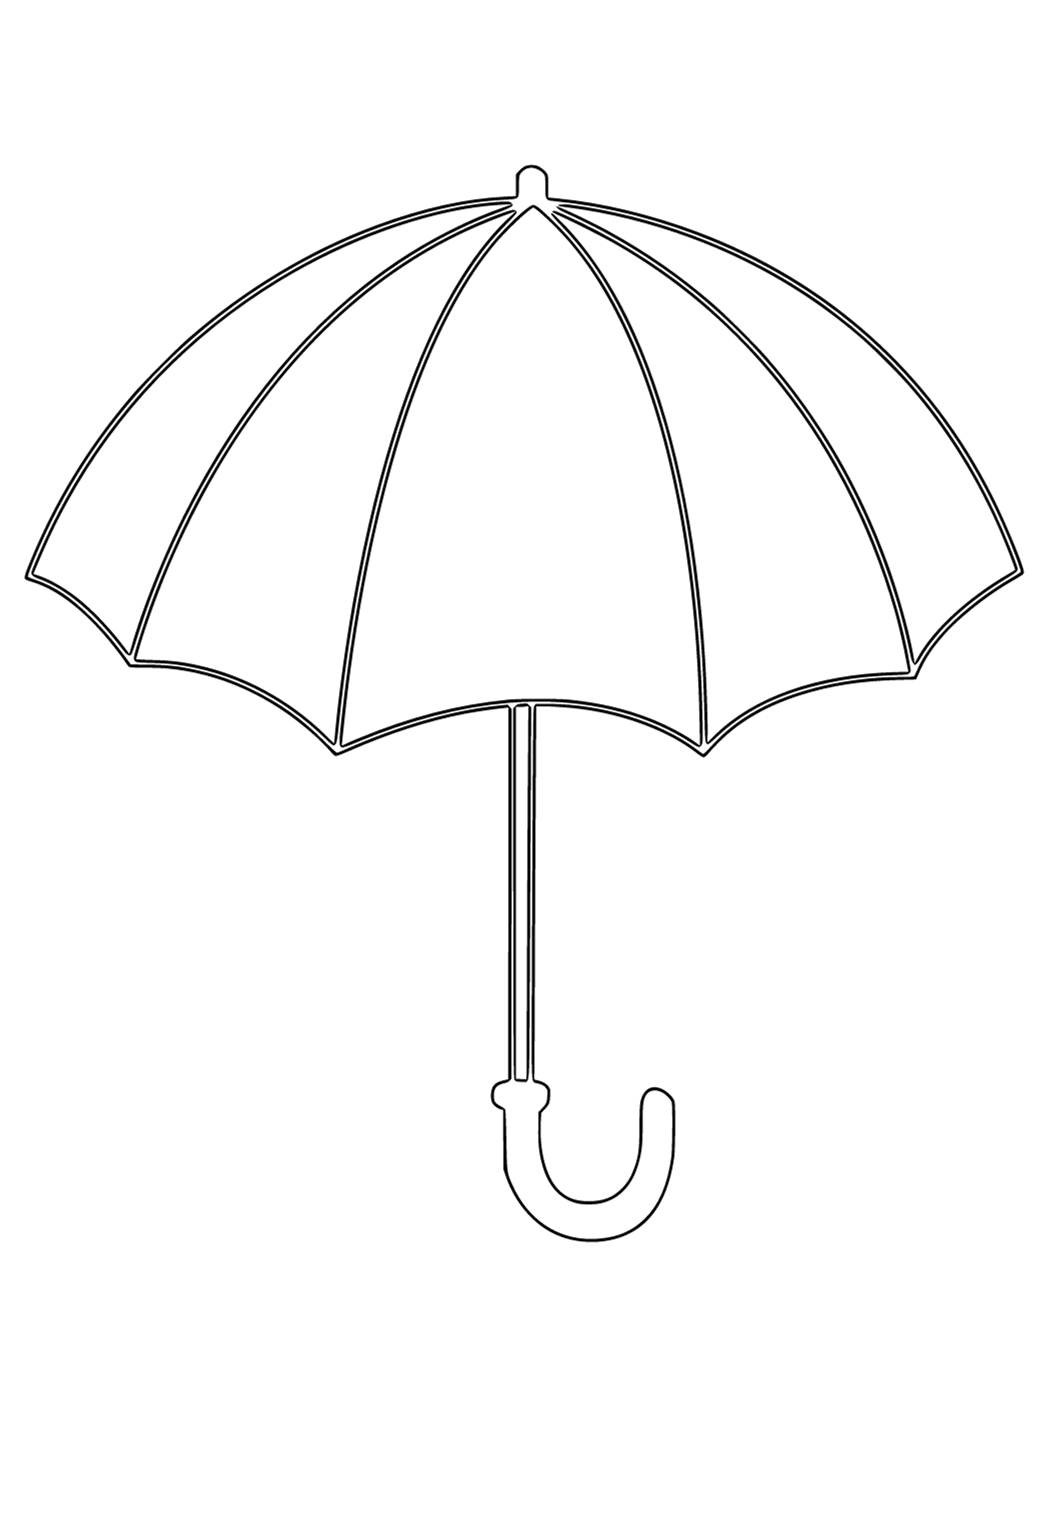 desen-umbrel-real-de-colorat-imprimabil-gratuit-pentru-adul-i-i